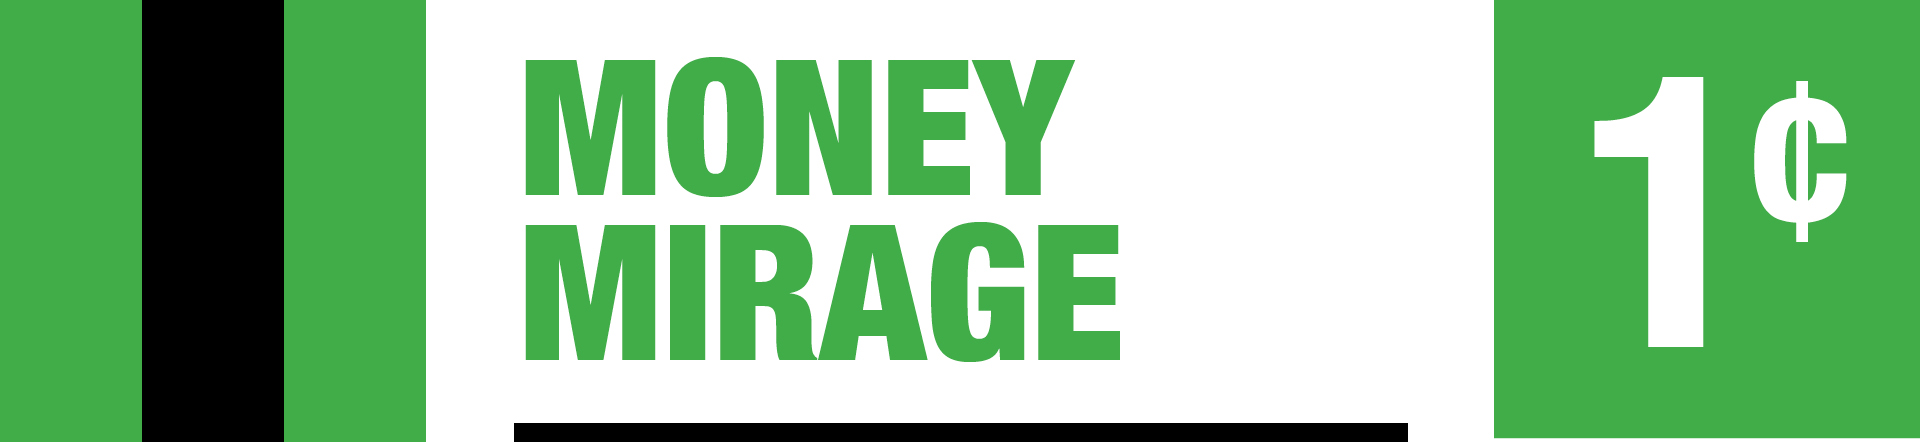 Money Mirage